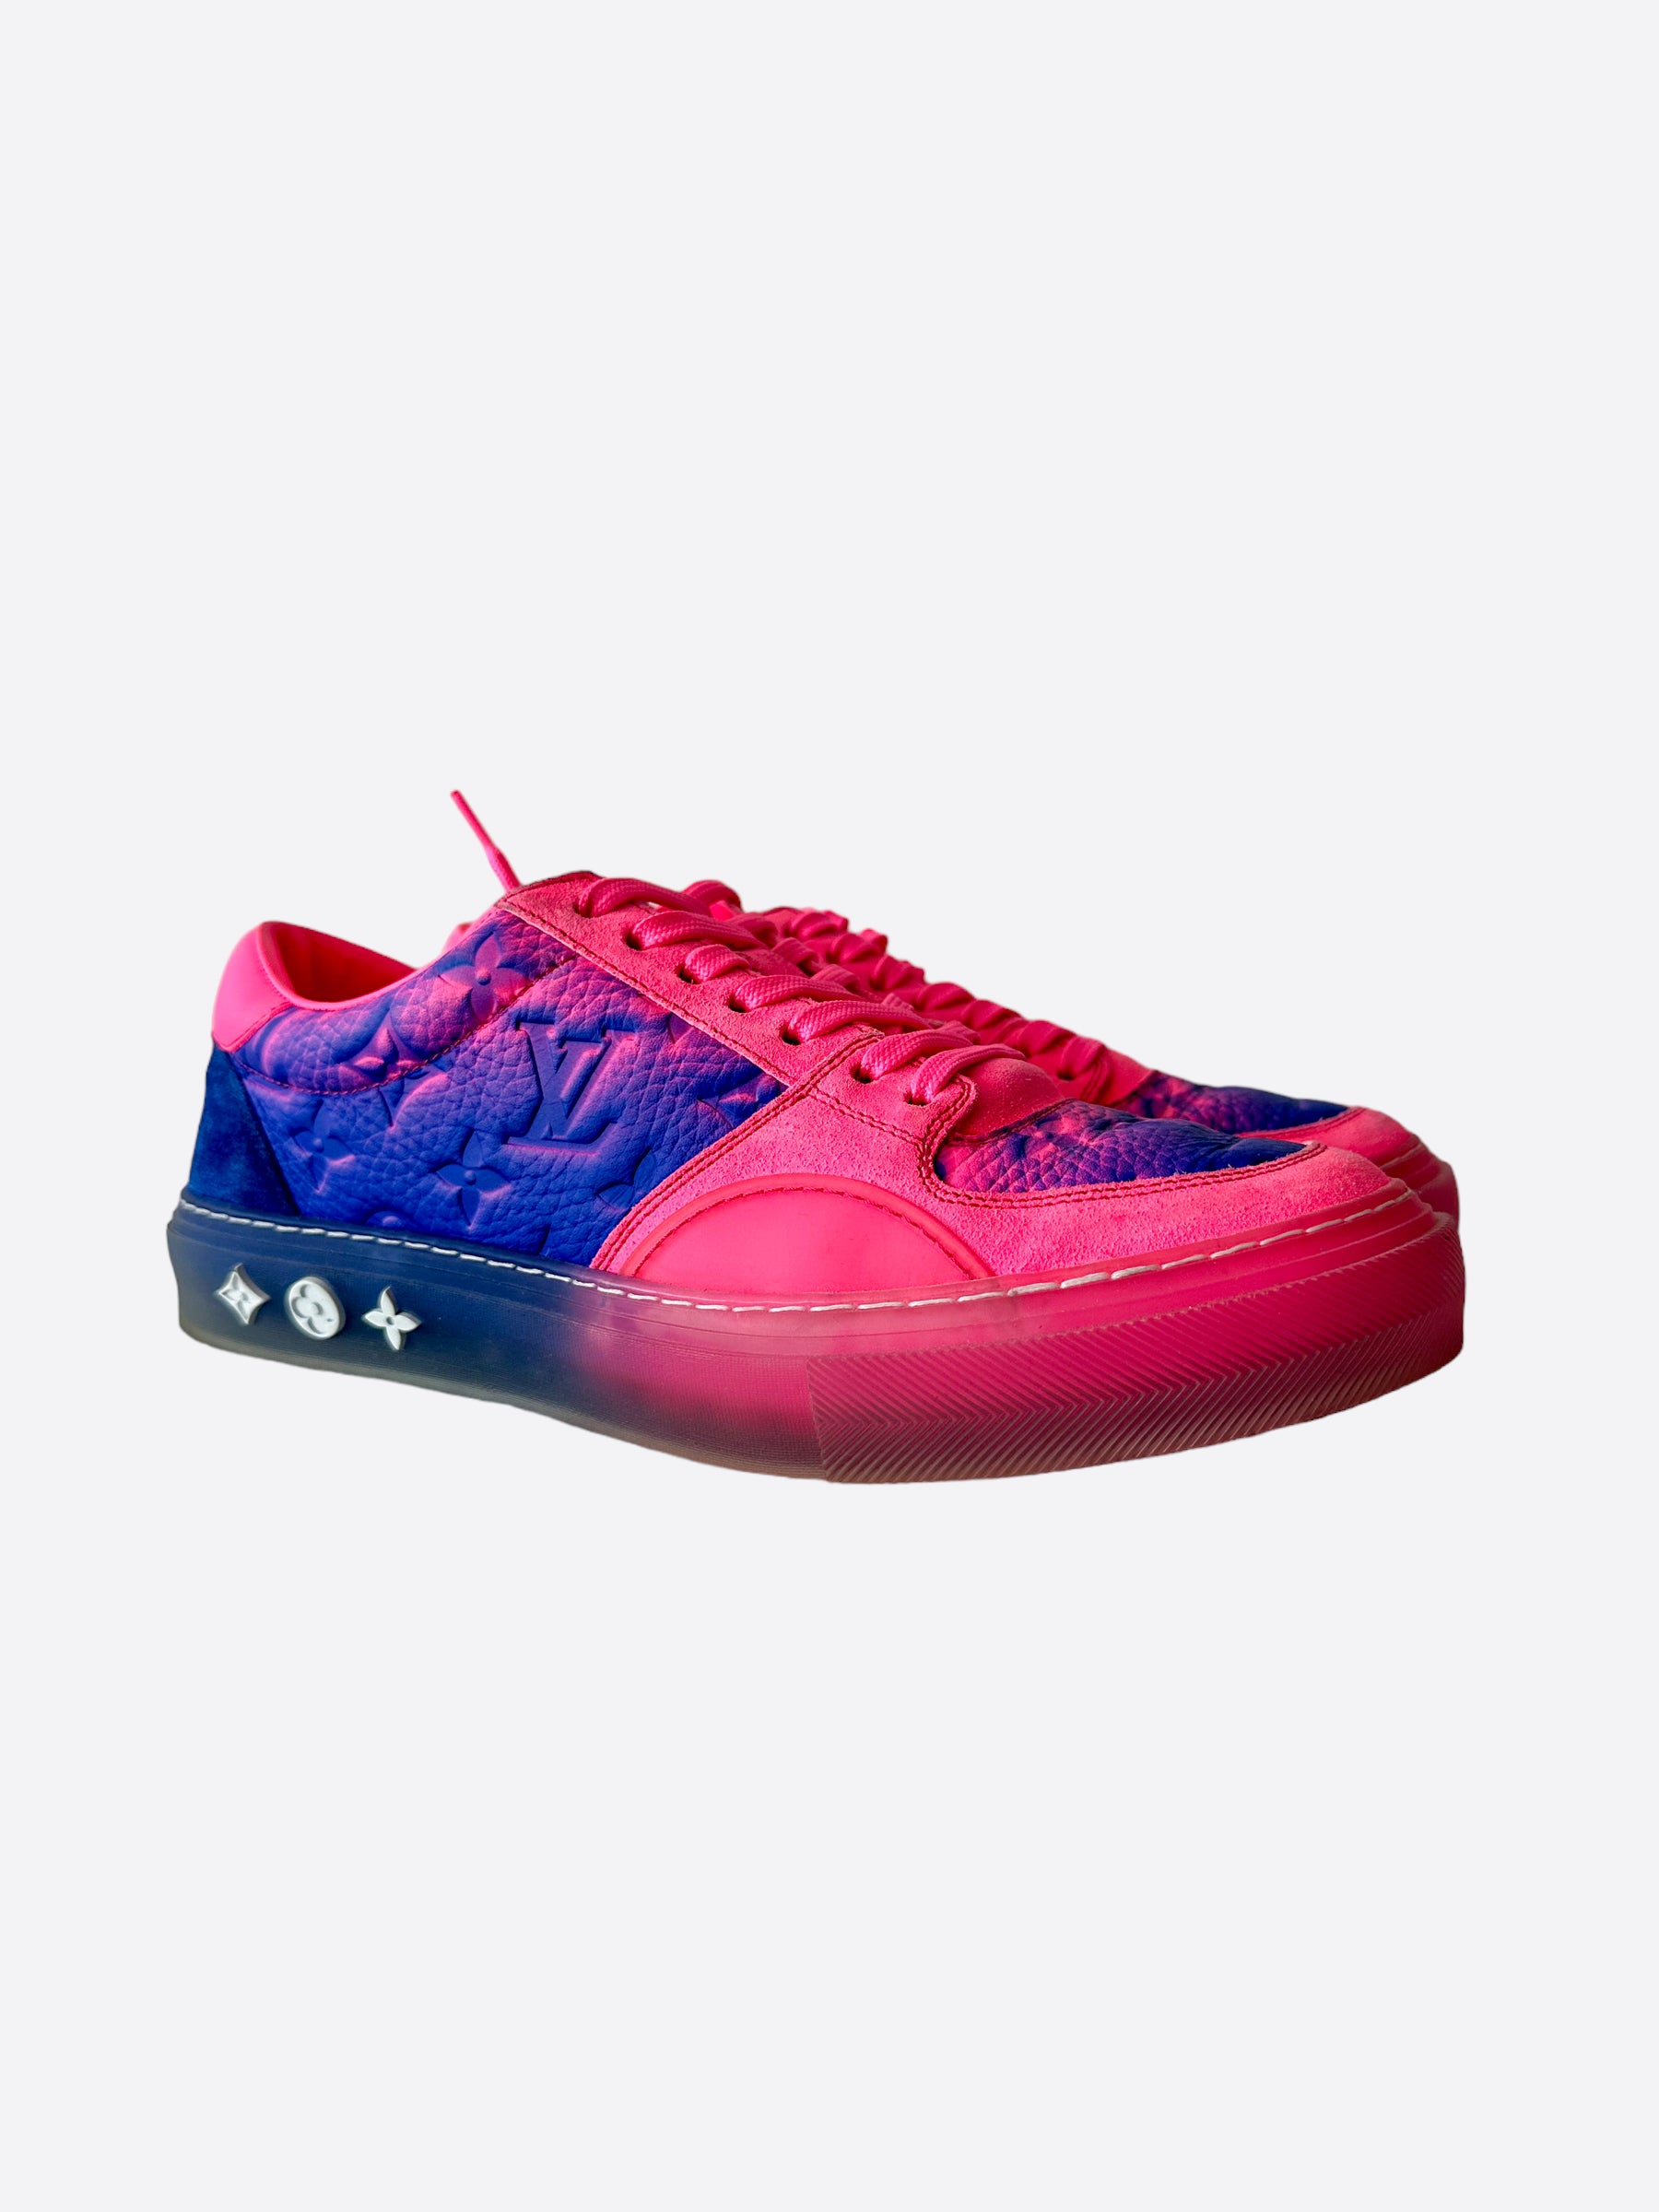 louis vuitton purple sneakers